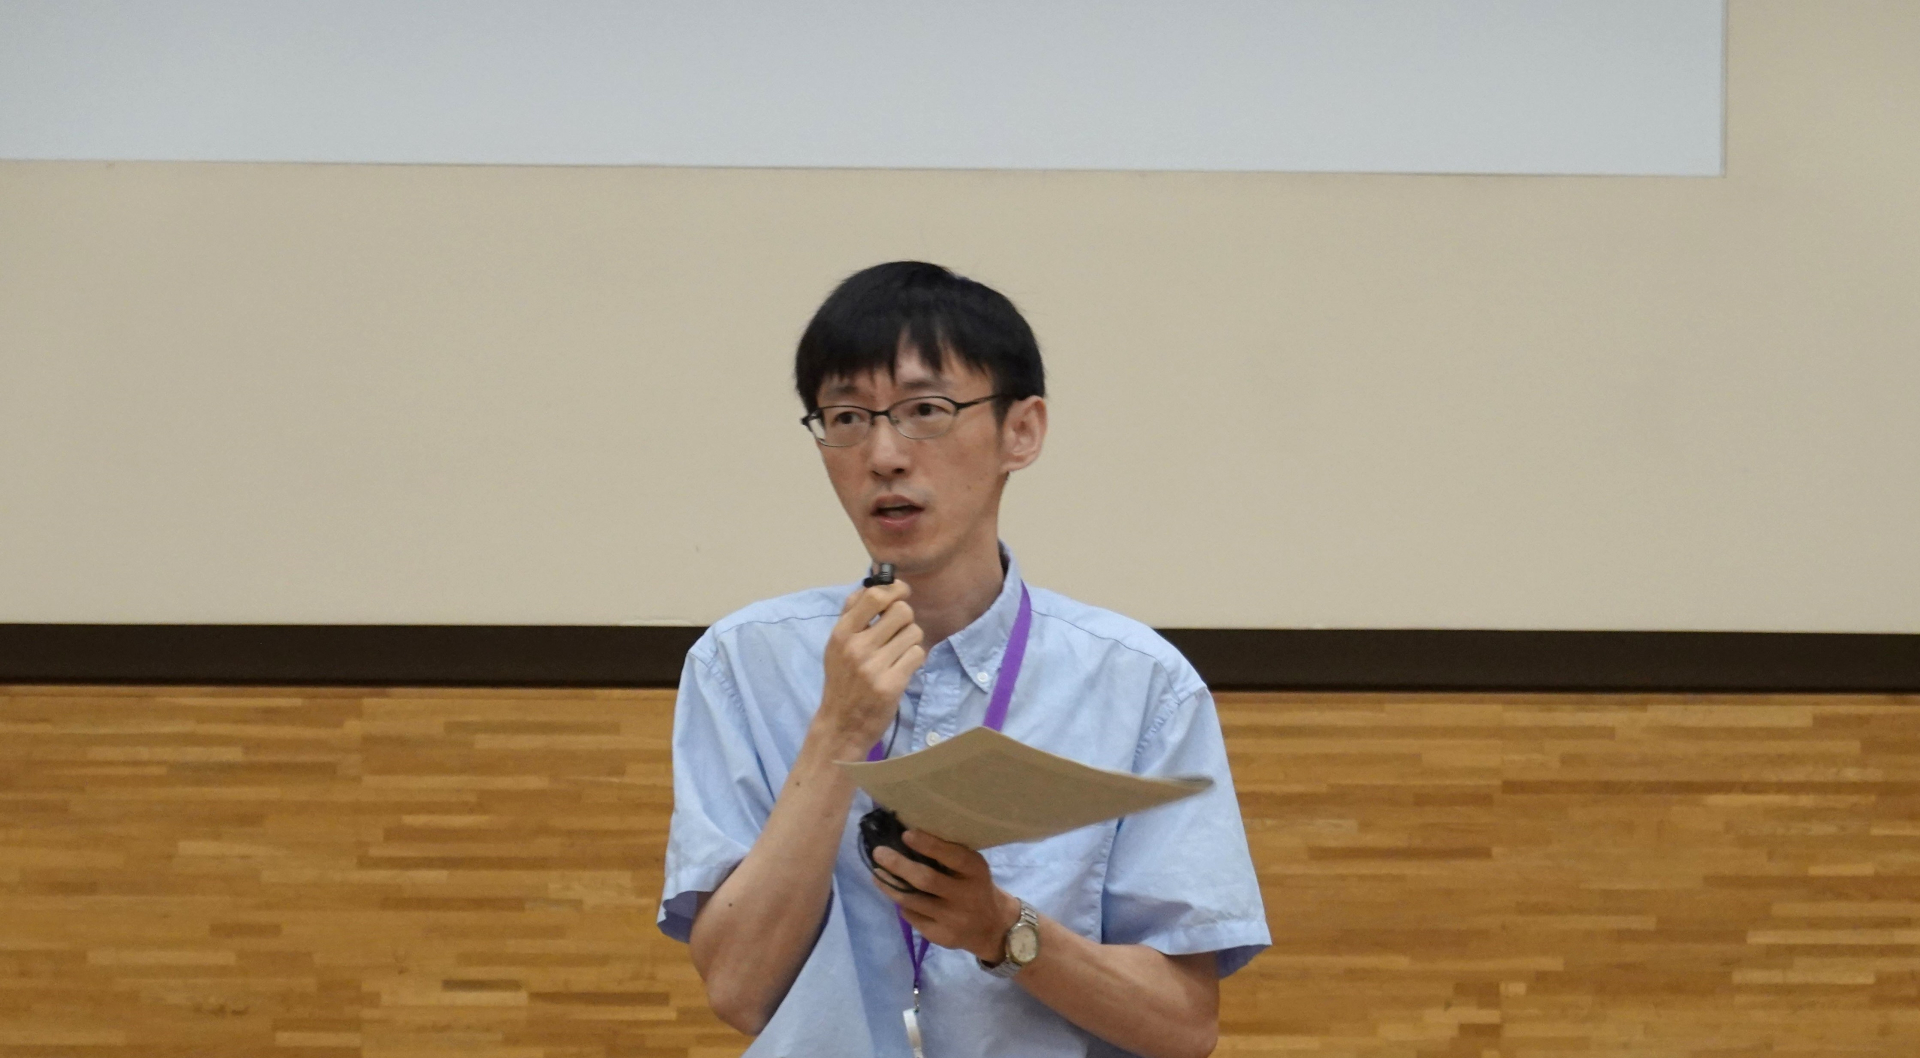 Bao Deyu giving a presentation using a prepared text